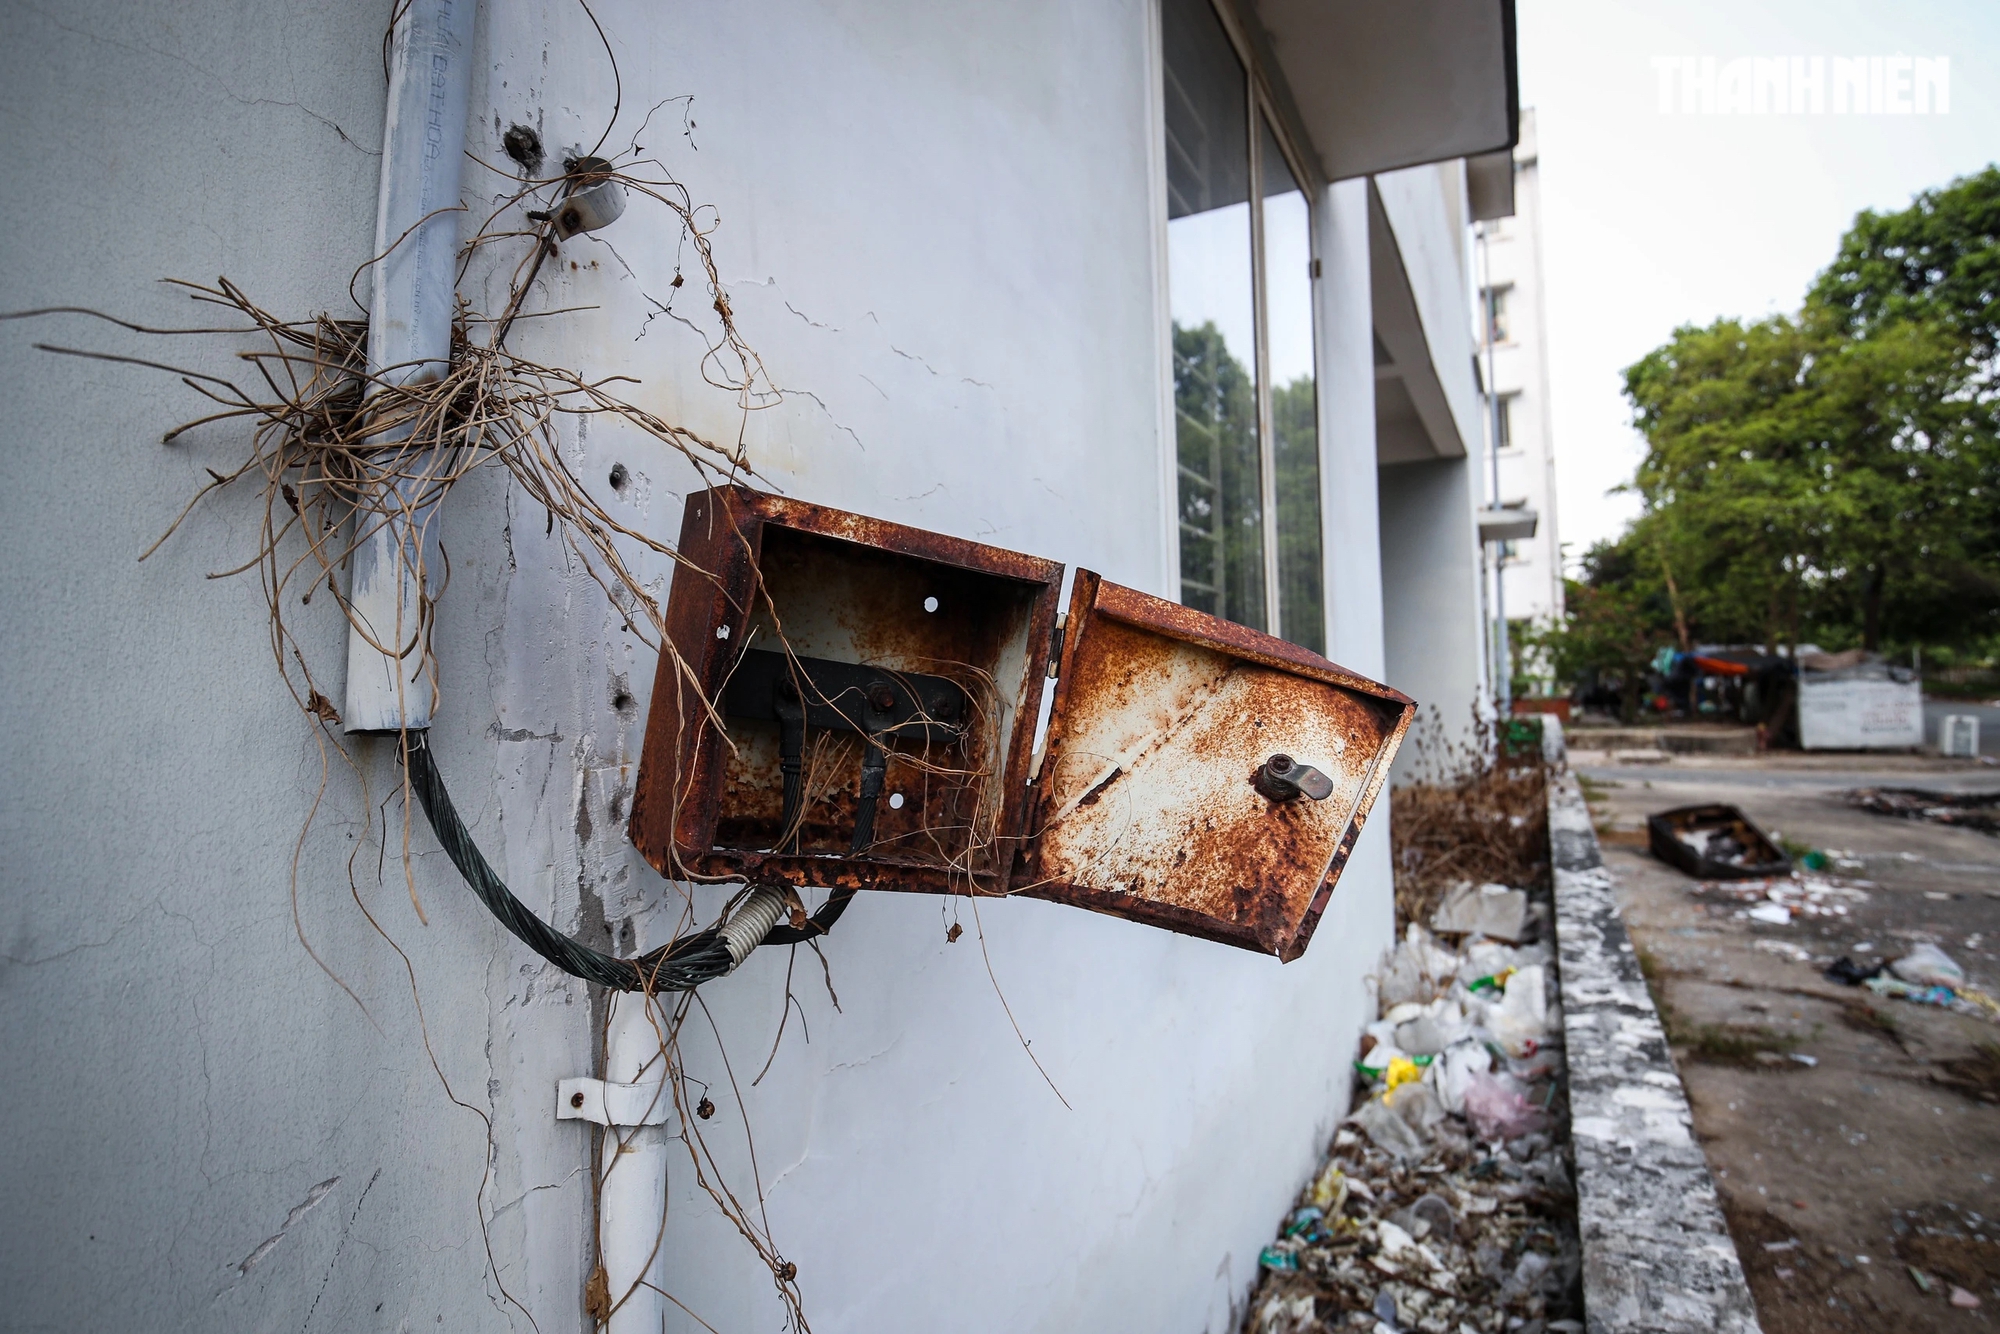 Trang thiết bị tại các căn hộ trong khu tái định cư Vĩnh Lộc B bị hư hỏng, xung quanh rác thải bốc mùi nồng nặc